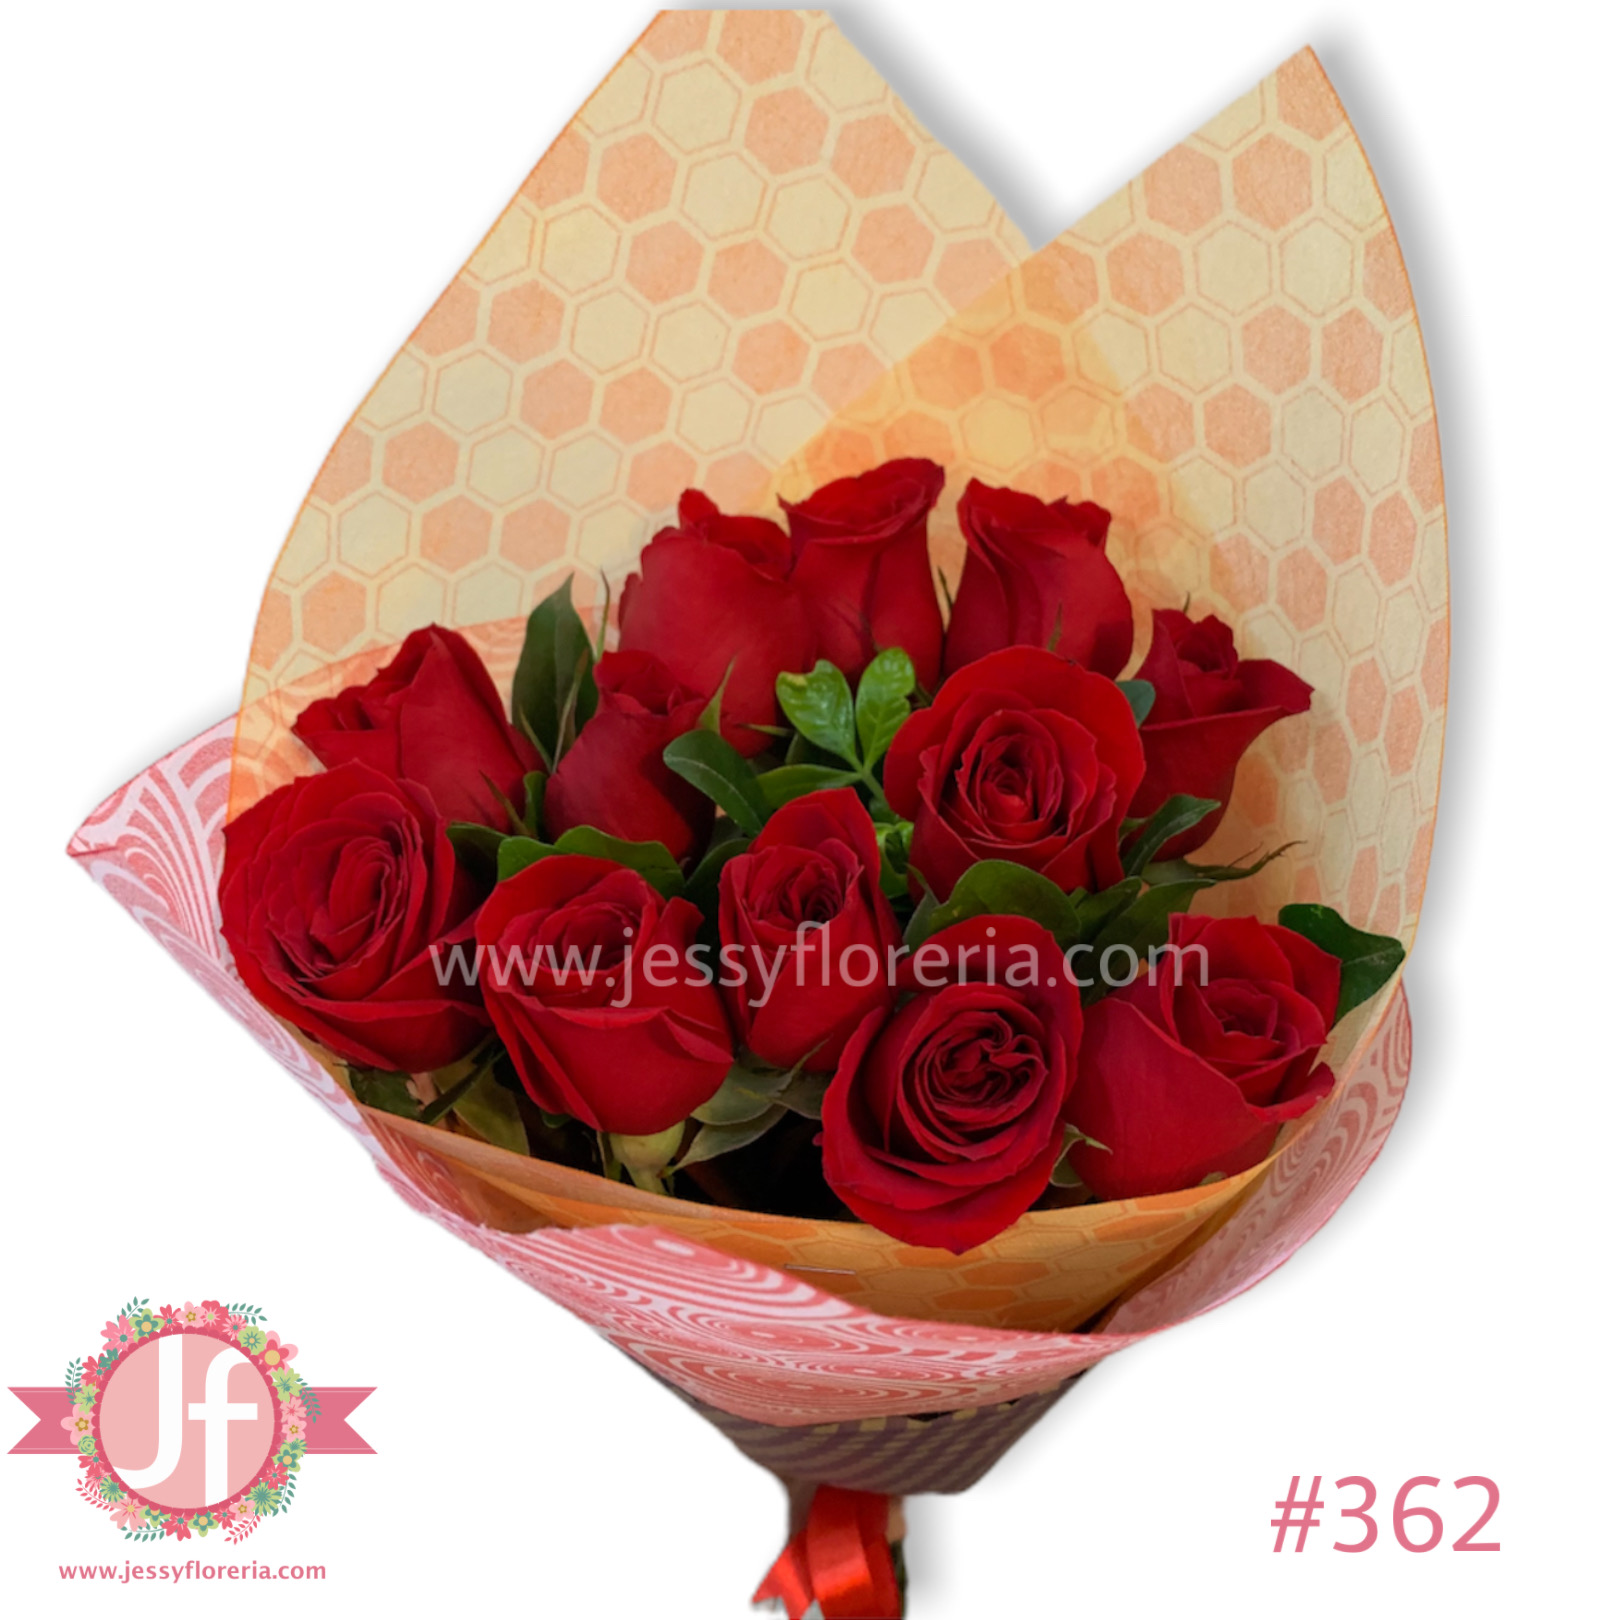 Docena de rosas rojas - Pedir con un día de anticipación Guadalajara -  Envíos a domicilio mismo día 2 a 4 Hrs